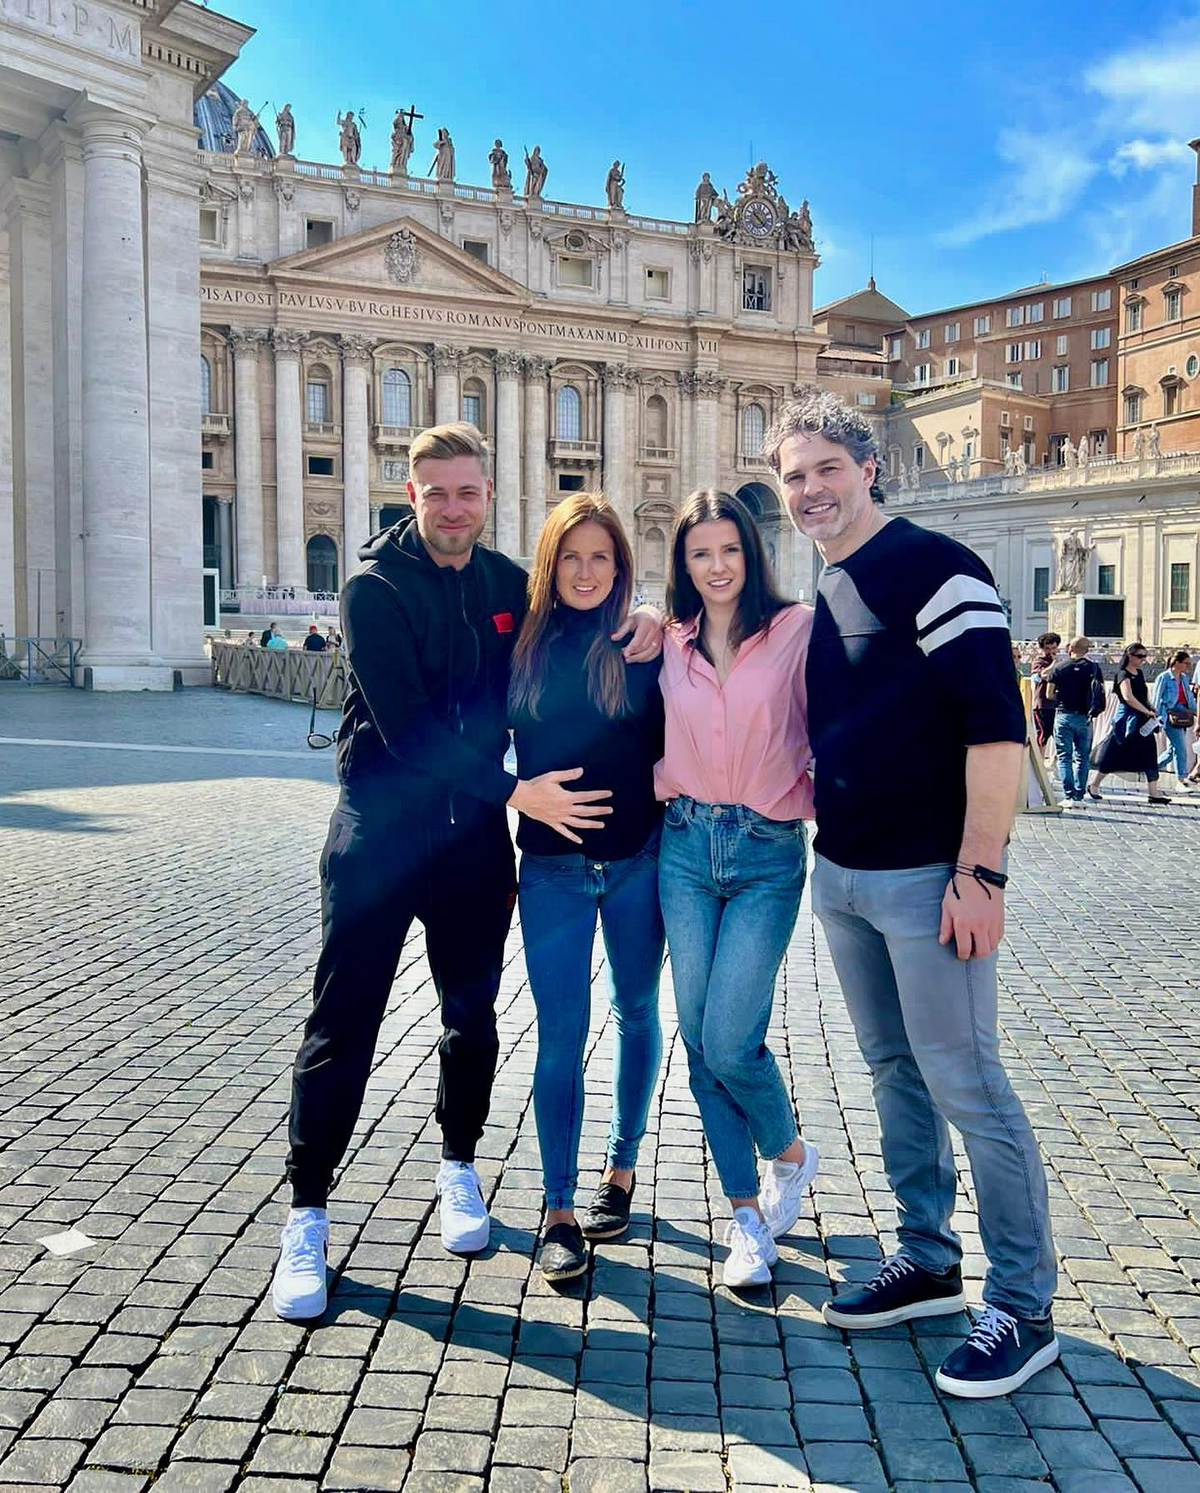 Jaromír Jágr tráví s přítelkyní Dominikou a přáteli dovolenou v Římě